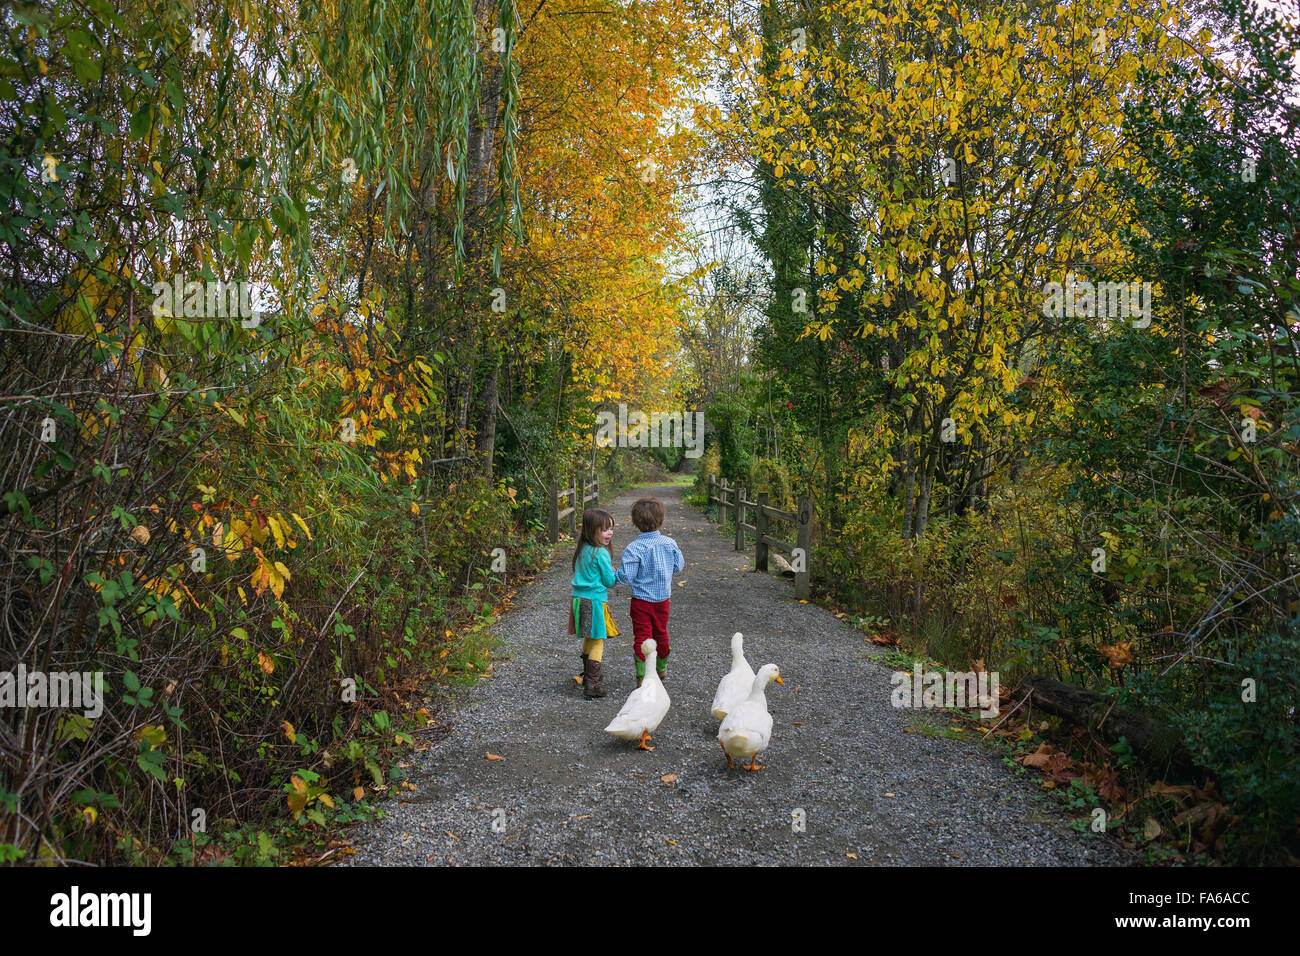 Jeune garçon et fille qui marche sur le chemin avec trois canards Banque D'Images